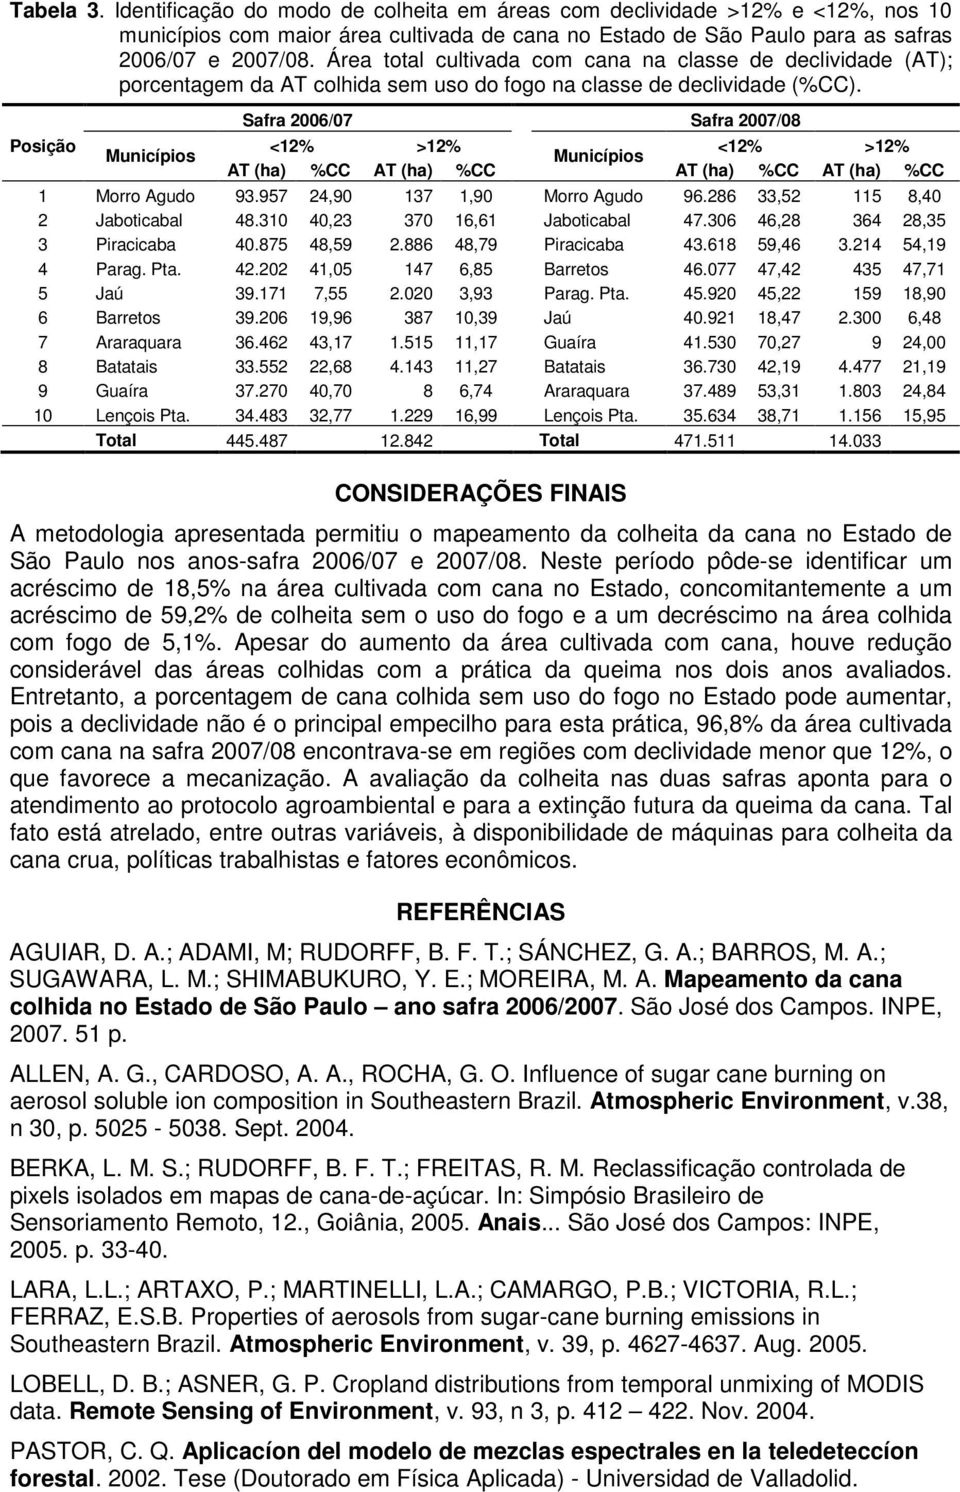 Posição Municípios Safra 2006/07 Safra 2007/08 <12% >12% <12% >12% Municípios AT (ha) %CC AT (ha) %CC AT (ha) %CC AT (ha) %CC 1 Morro Agudo 93.957 24,90 137 1,90 Morro Agudo 96.